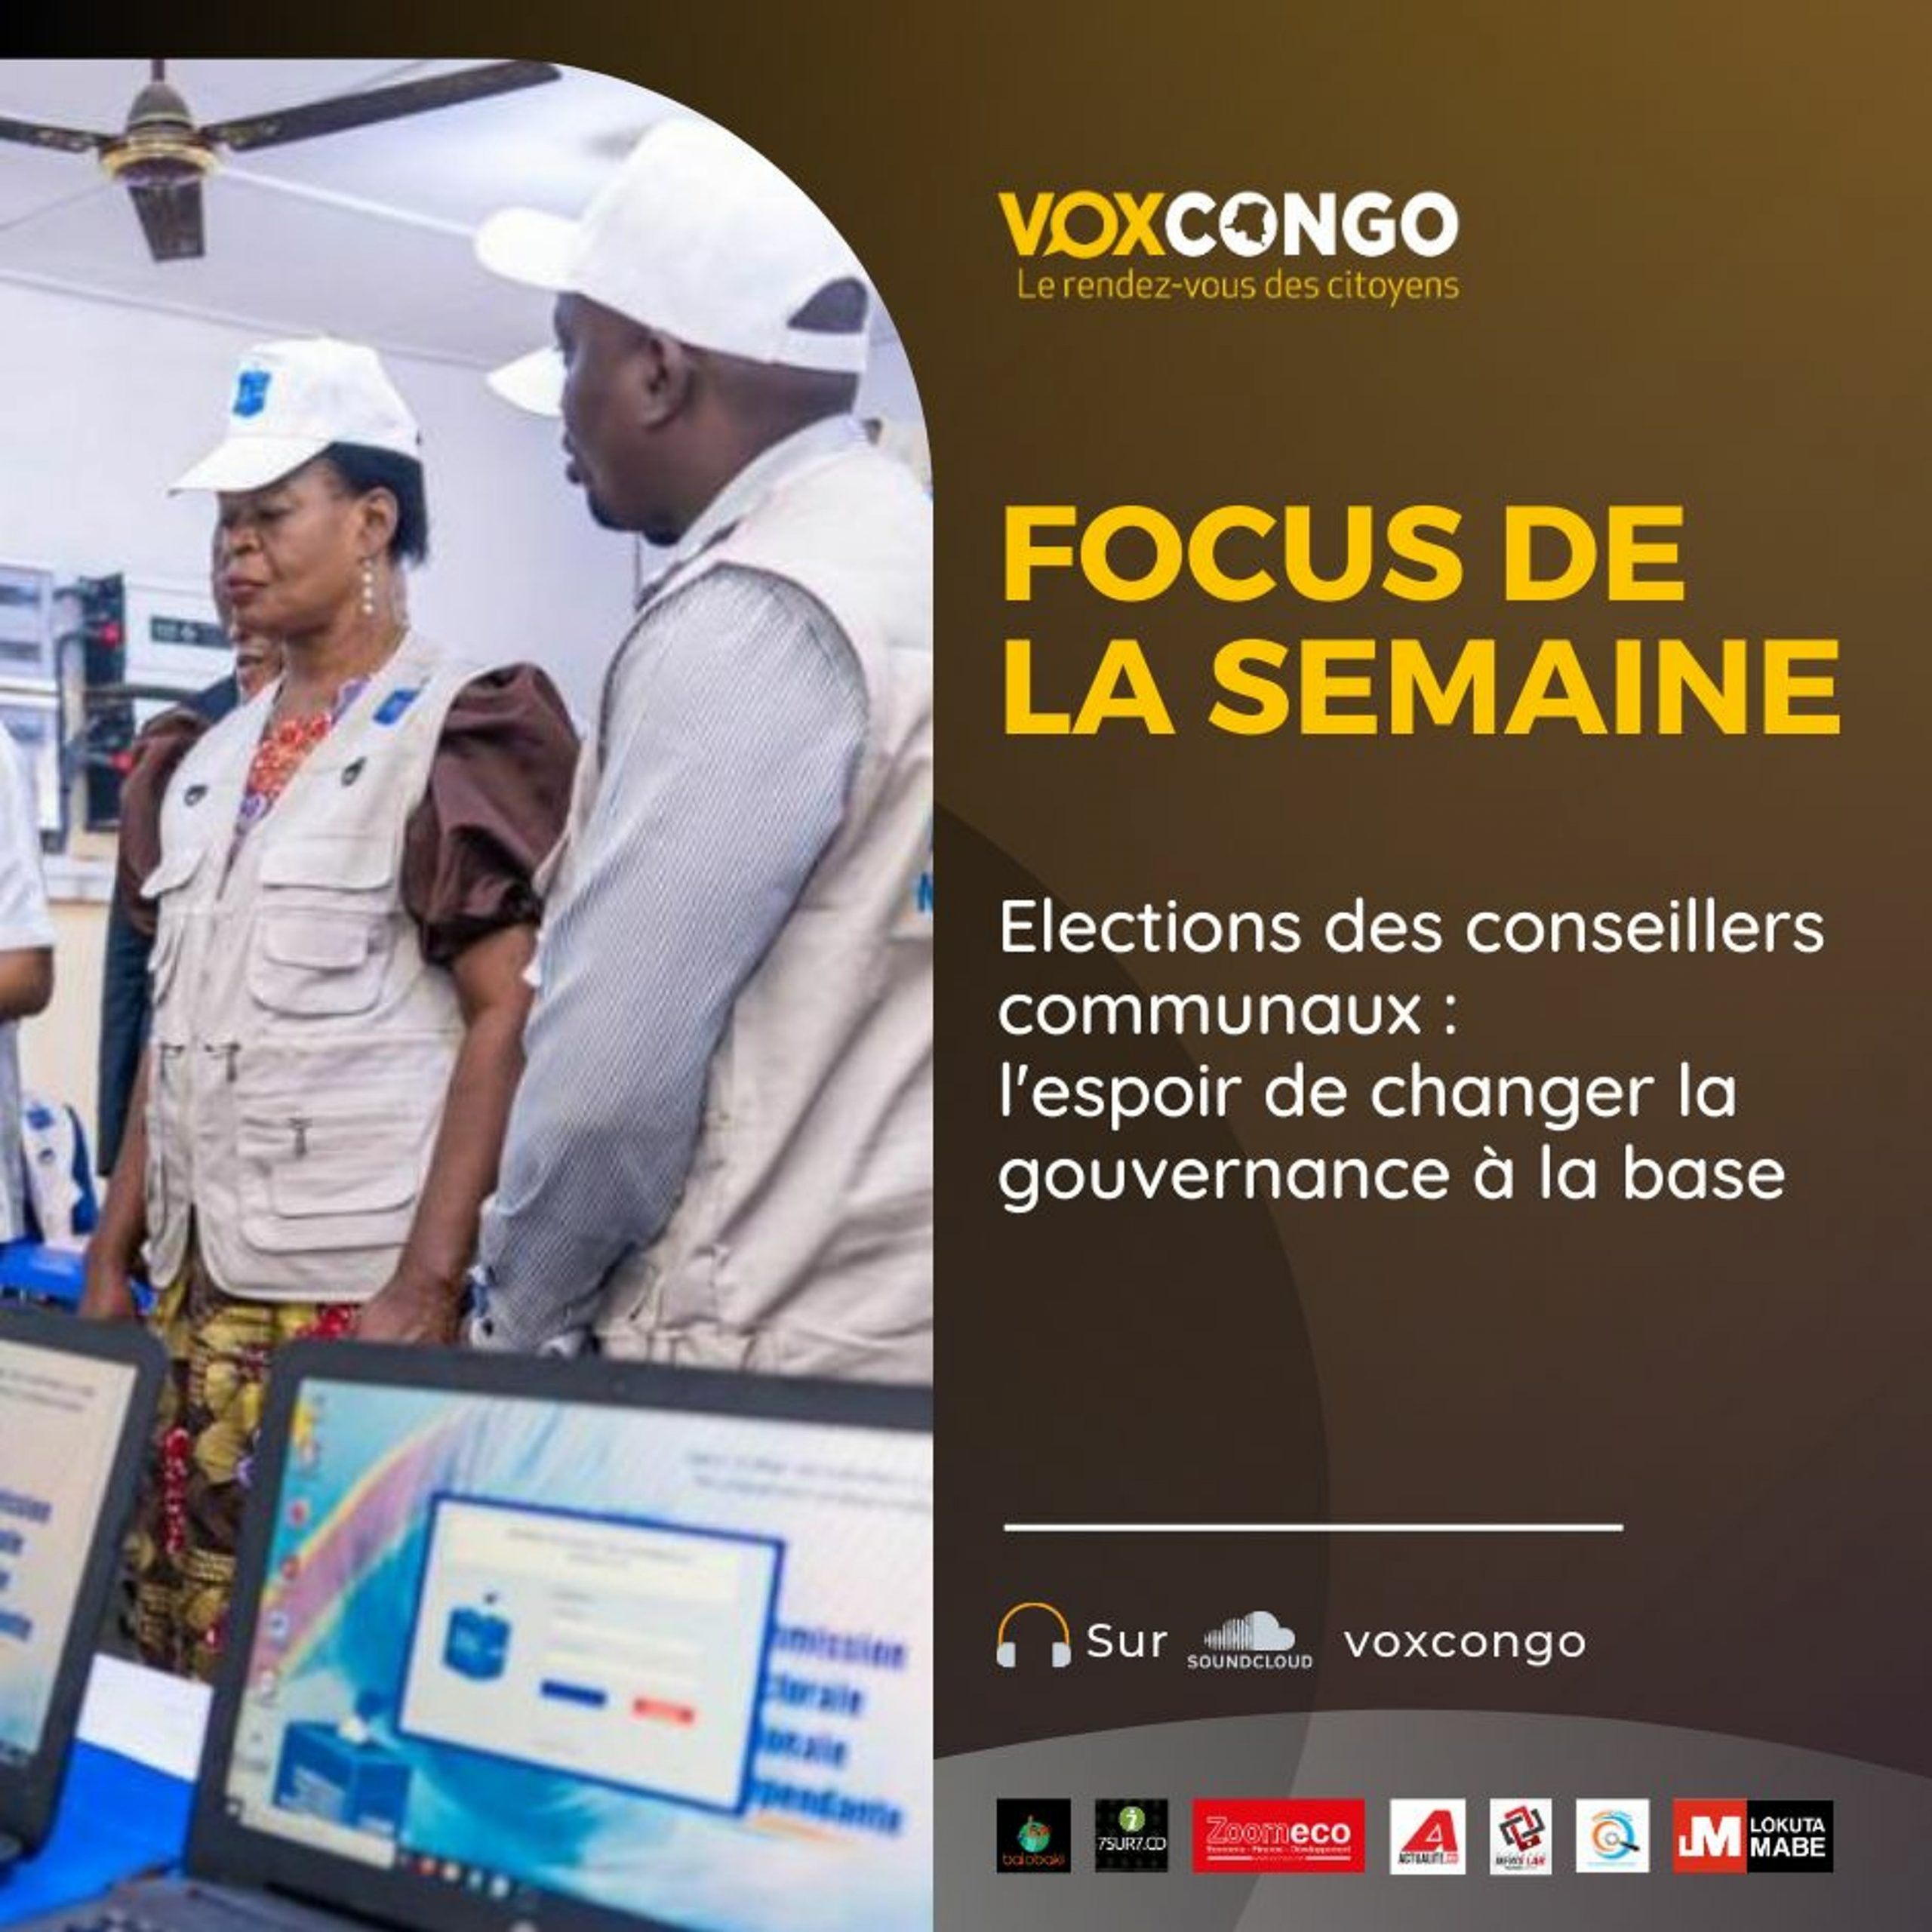 Focus de la semaine : Elections des conseillers communaux : espoir de changer la gouvernance à la base